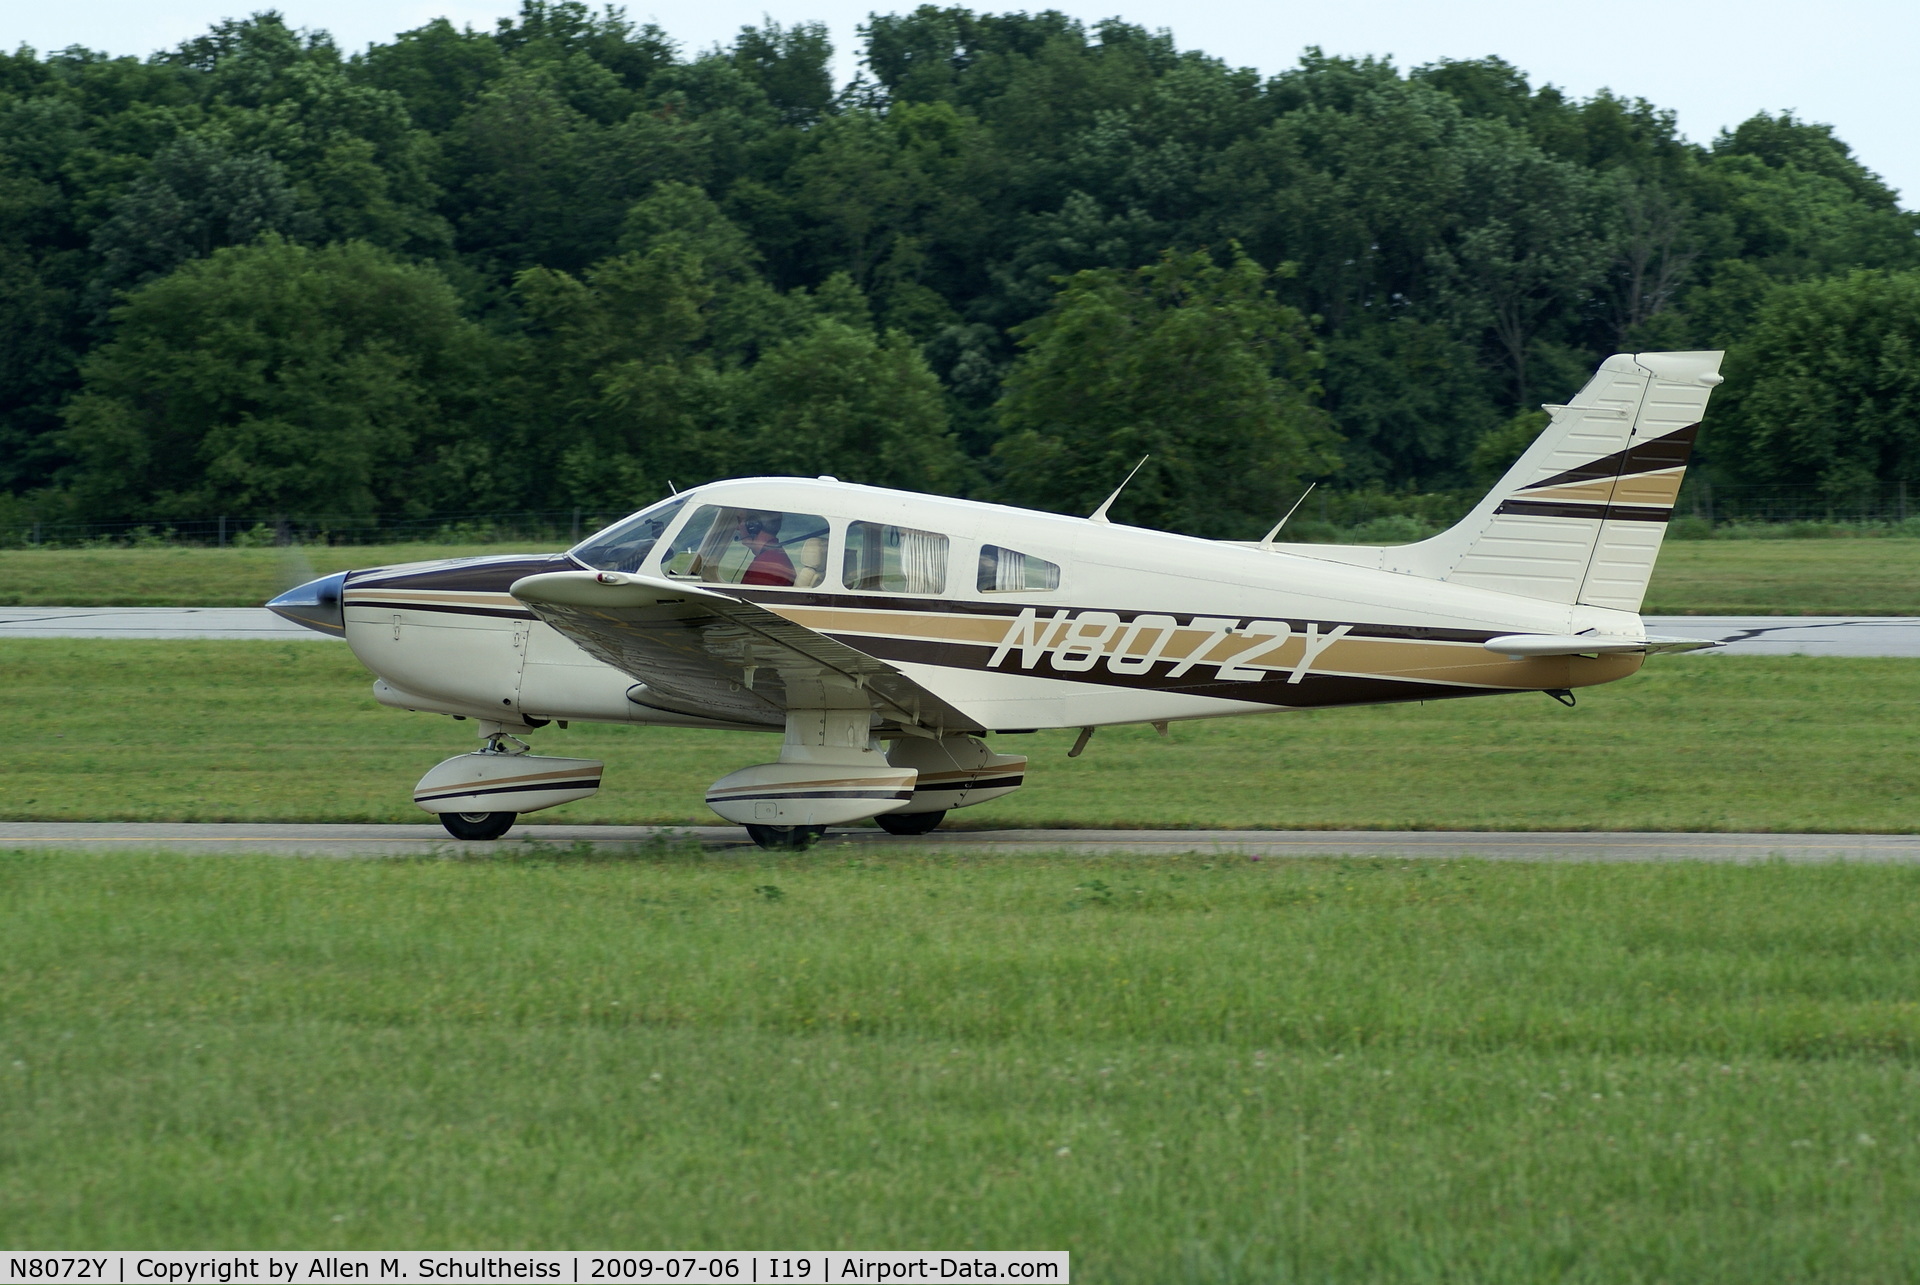 N8072Y, 1979 Piper PA-28-236 Dakota C/N 28-7911315, 1979 PA-28-236